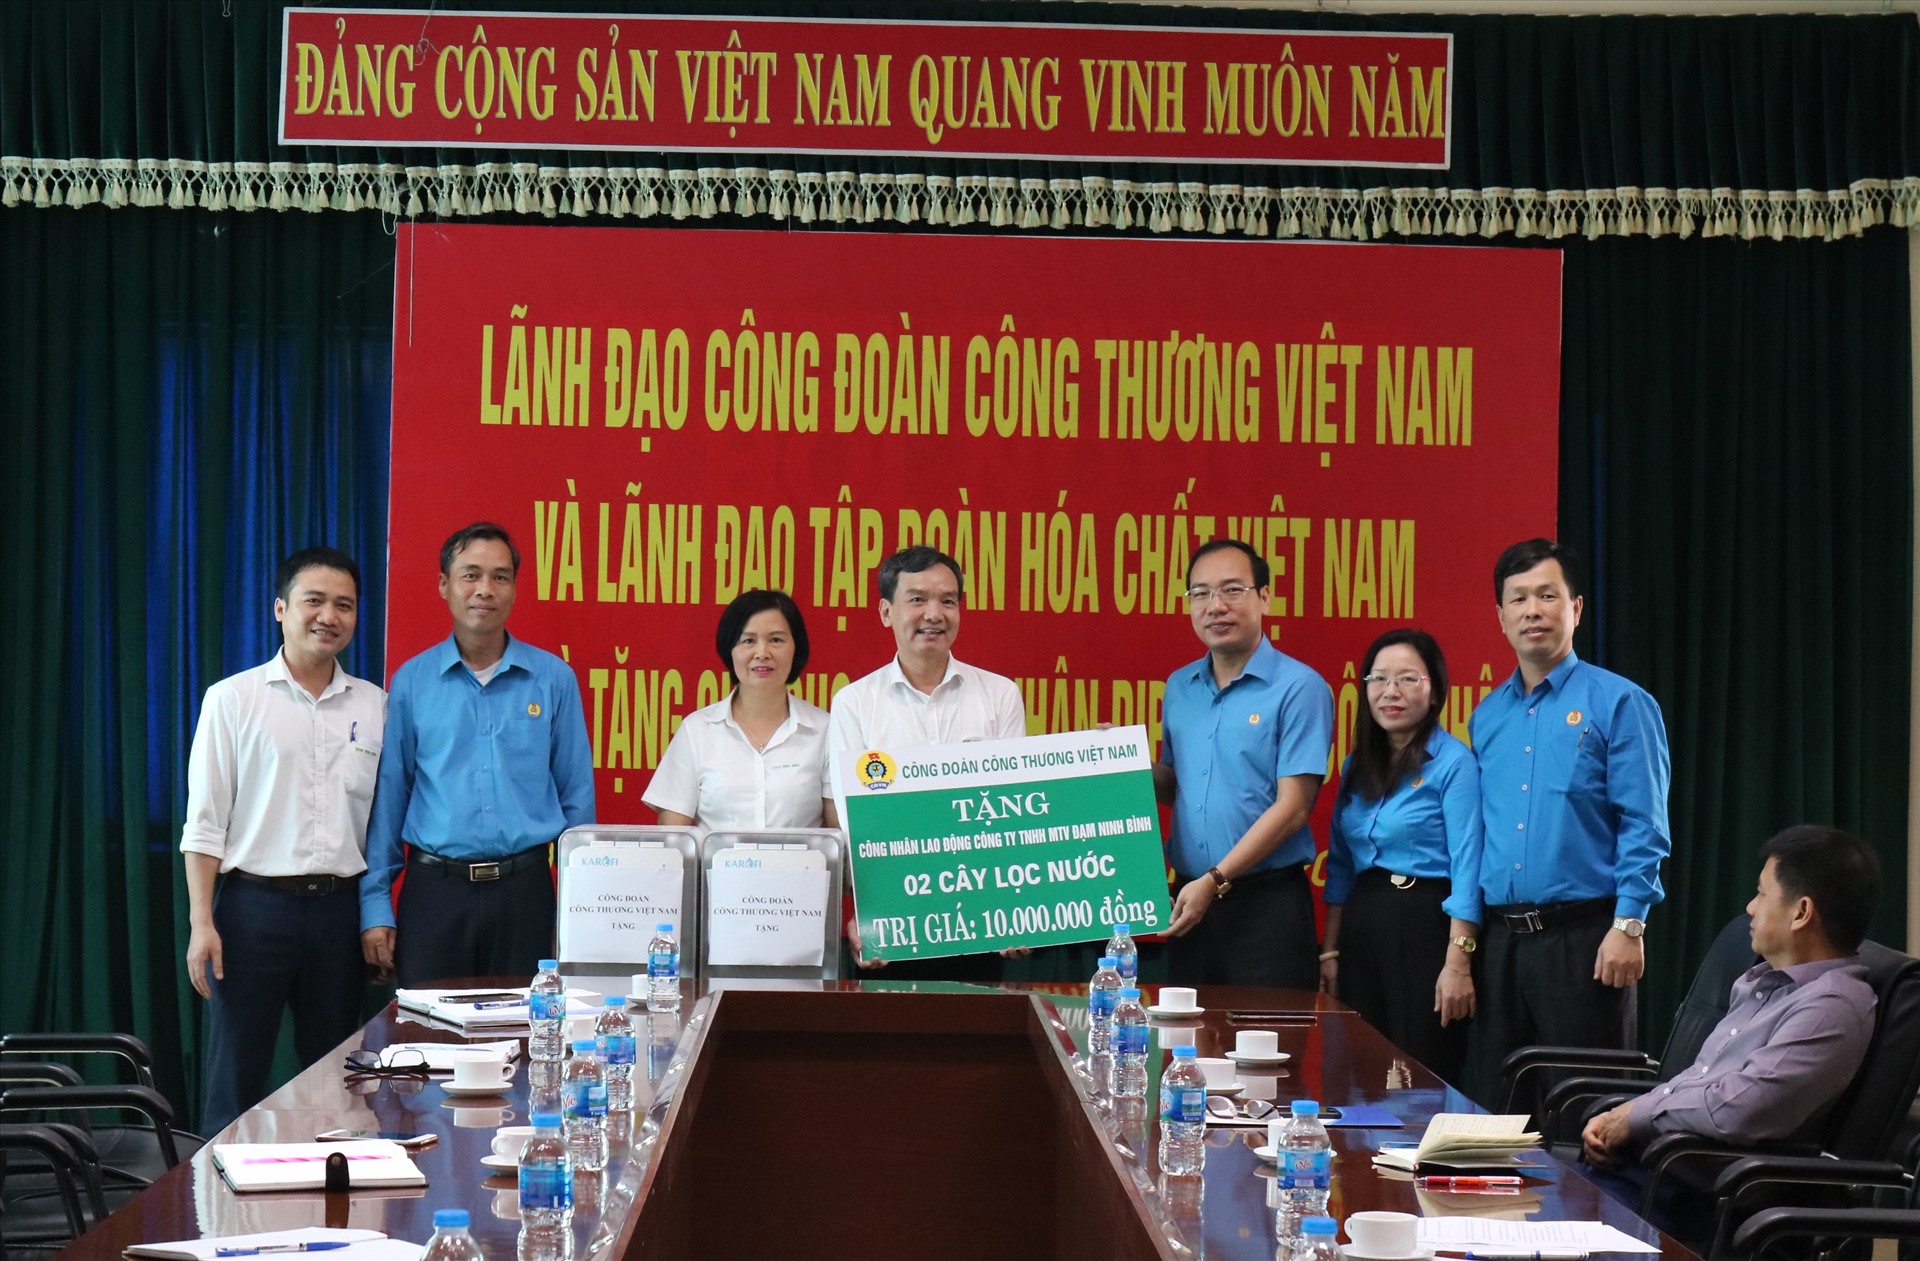 Lãnh đạo Công đoàn Công thương Việt Nam và Công đoàn Công nghiệp Hoá chất Việt Nam tặng quà đại diện người lao động. Ảnh: Xuân Tùng